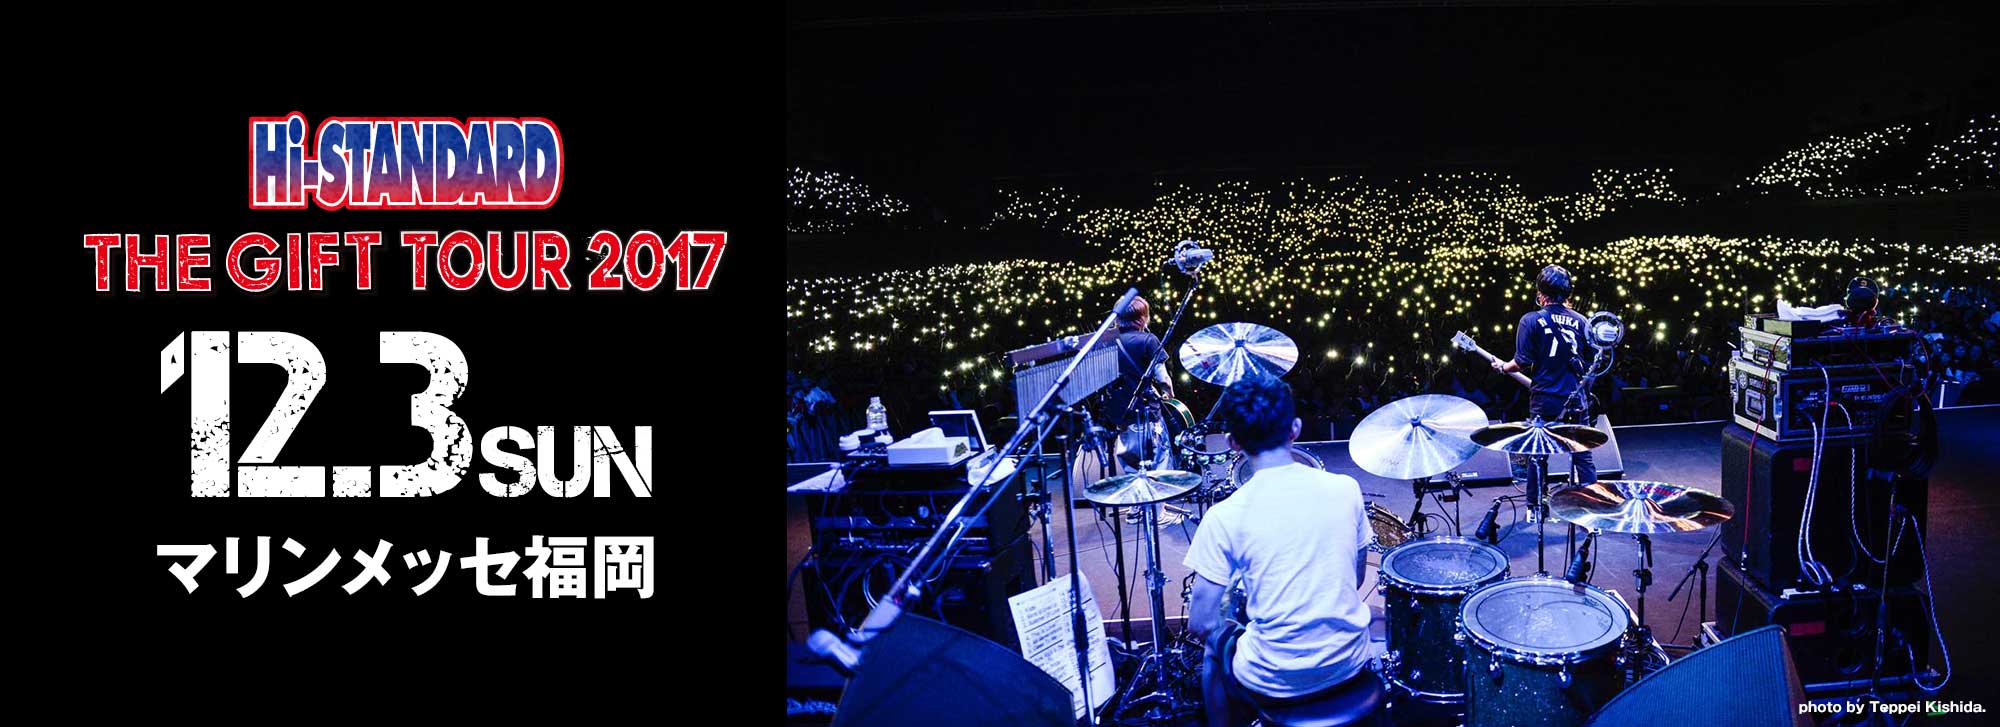 Hi-STANDARD THE GIFT TOUR 2017 12.3 SUN マリンメッセ福岡